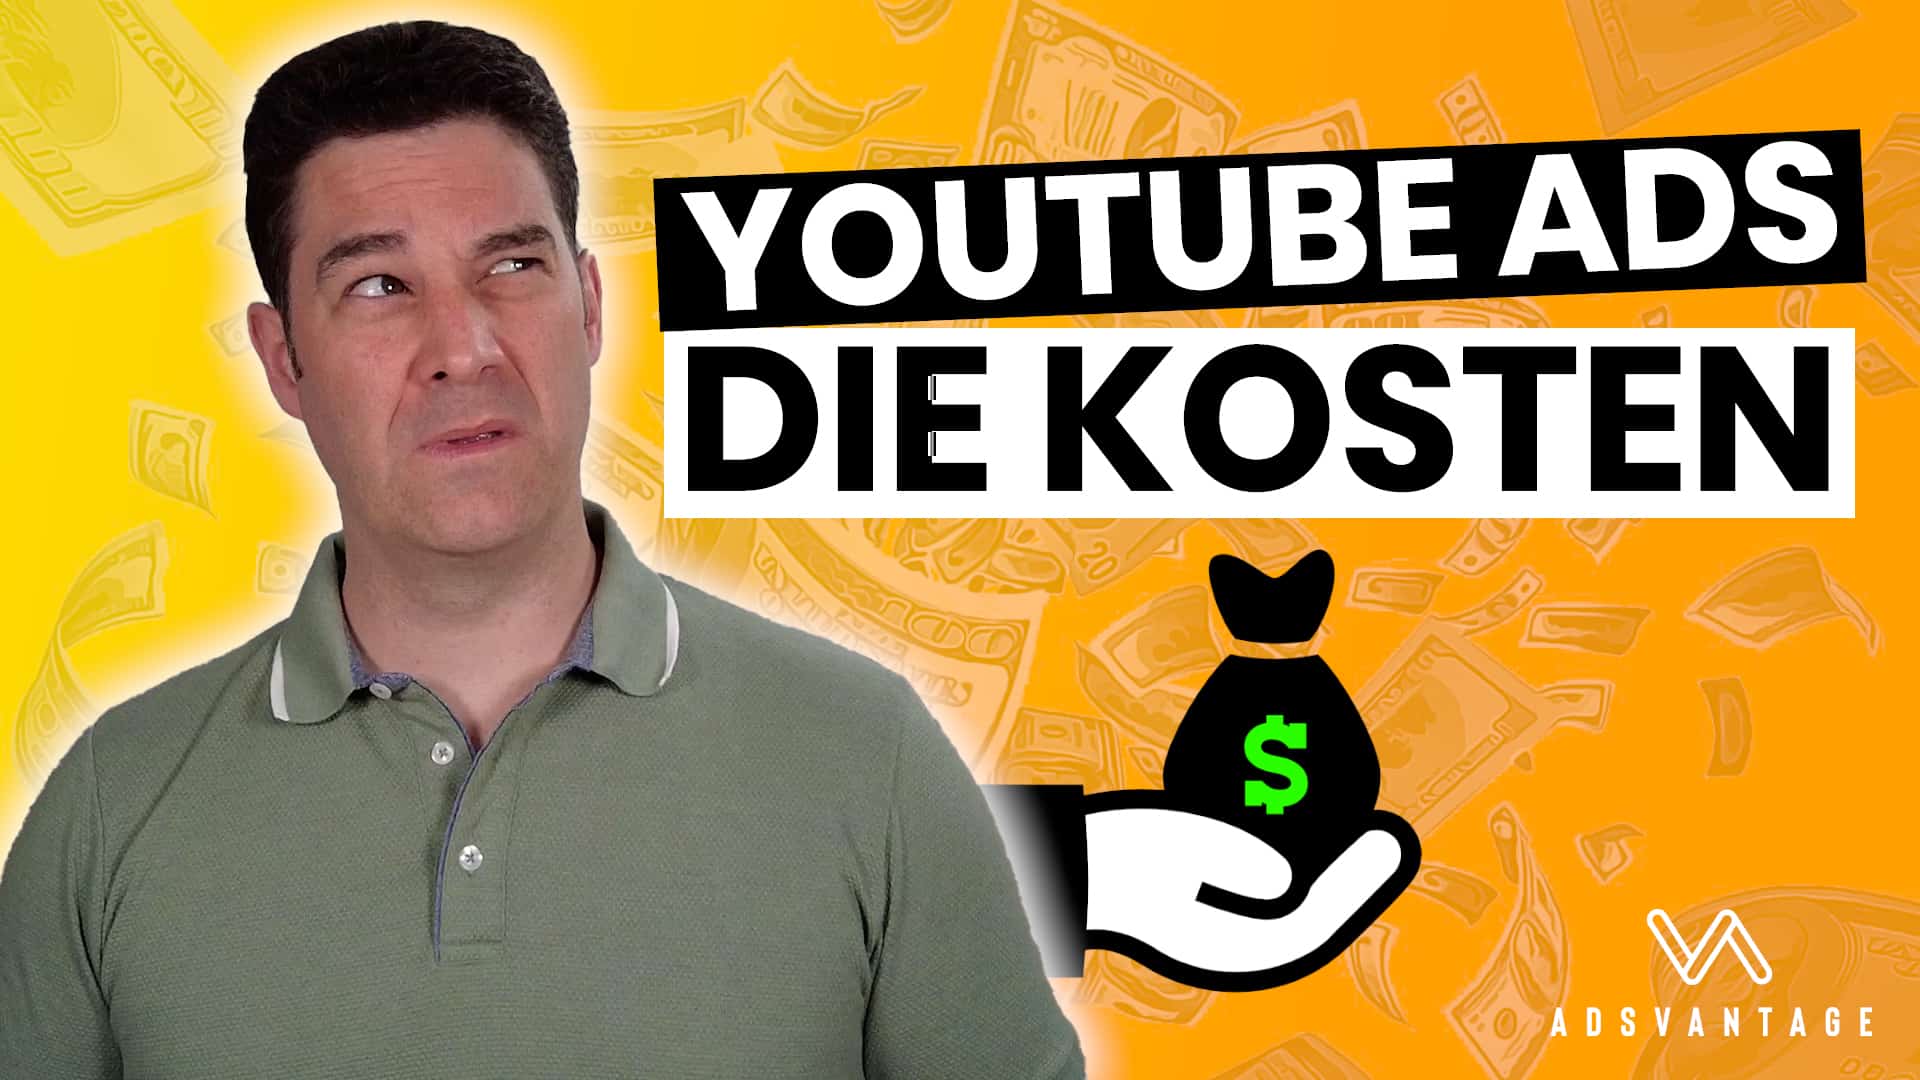 YouTube Ads Kosten – Was kostet dich YouTube Werbung?